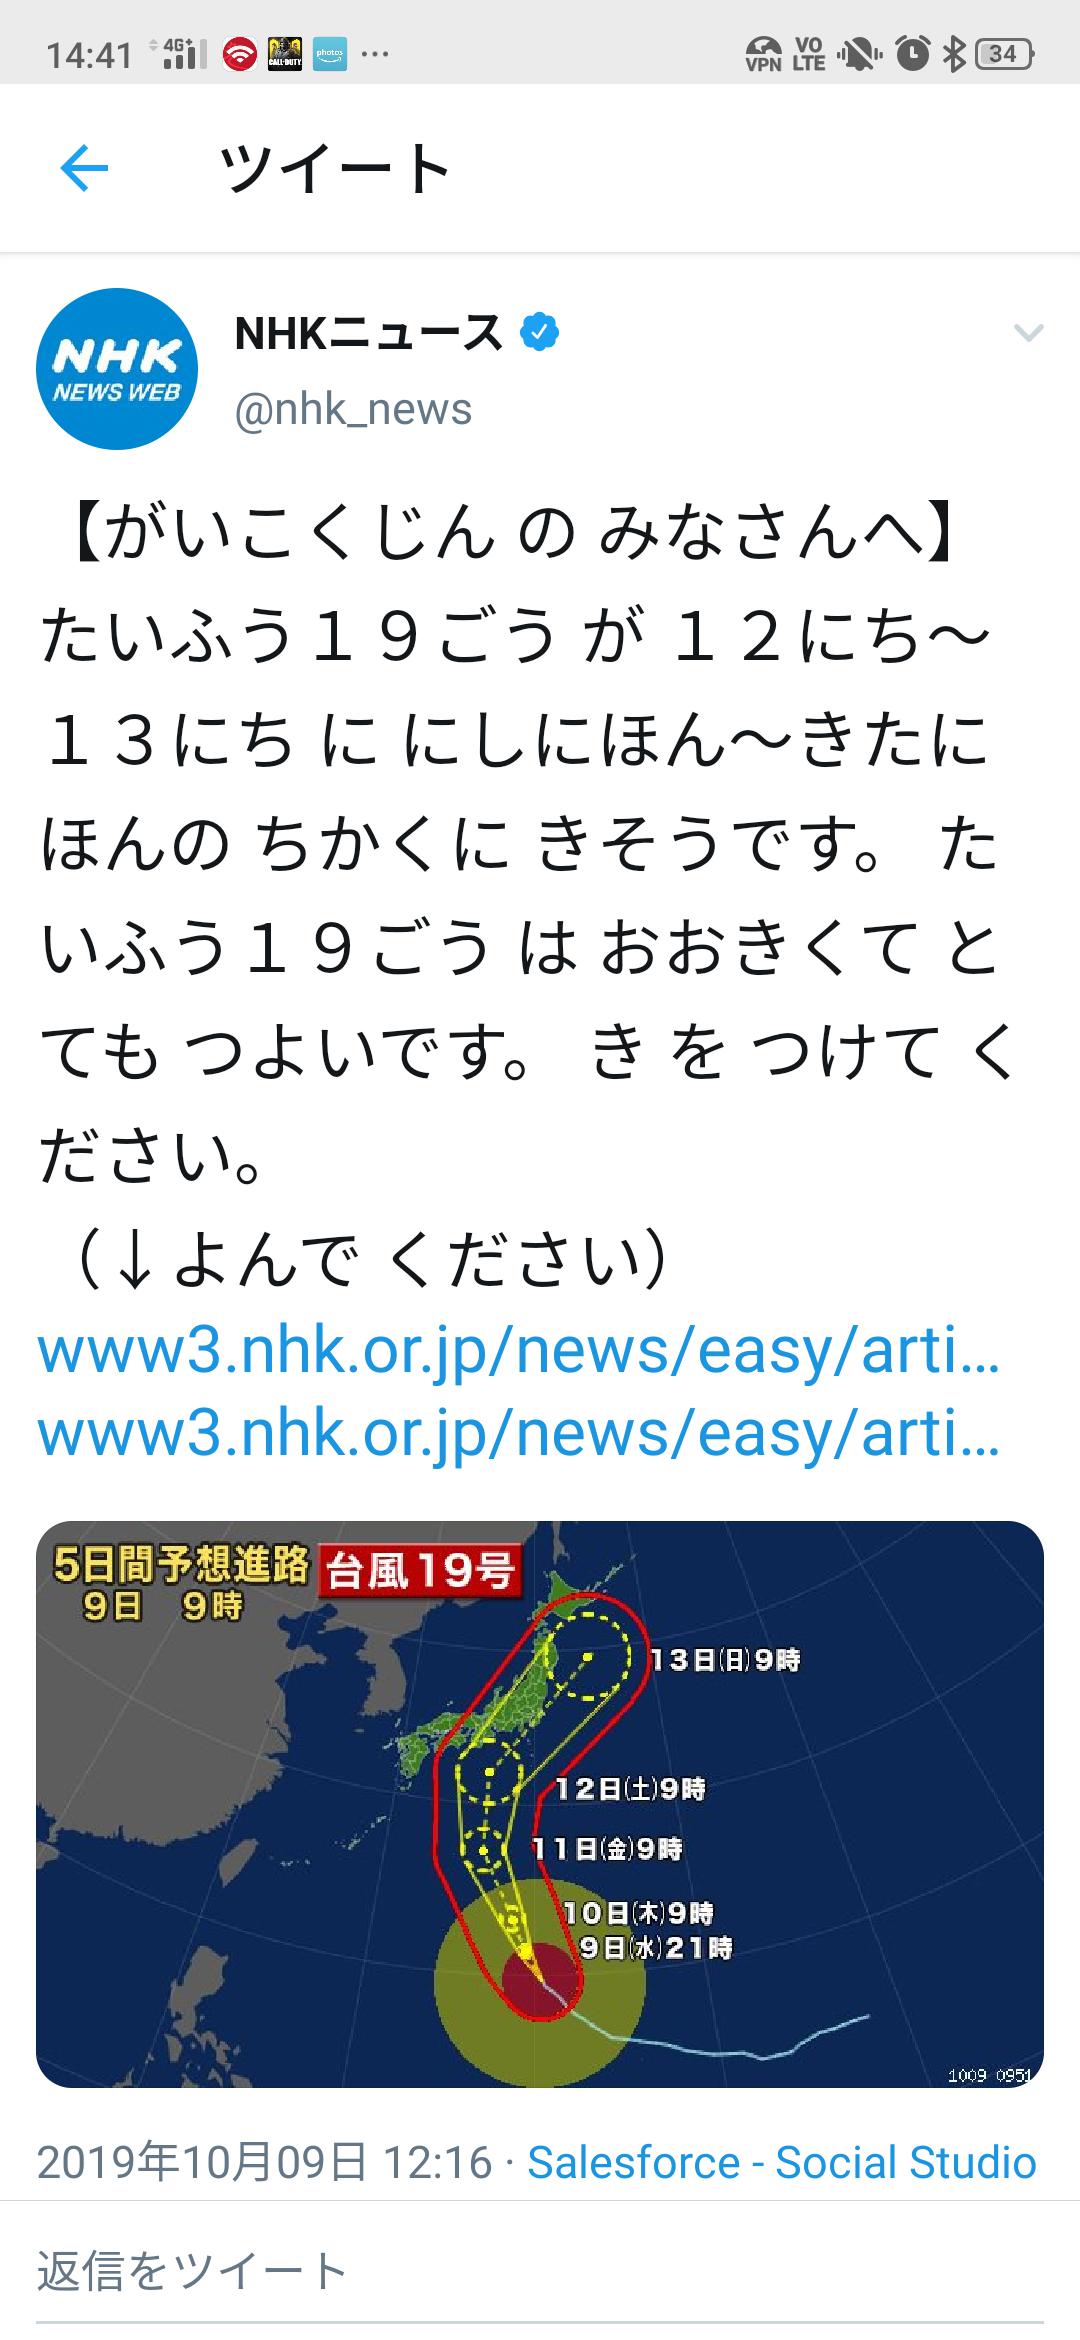 [Sad news] NHK playfully